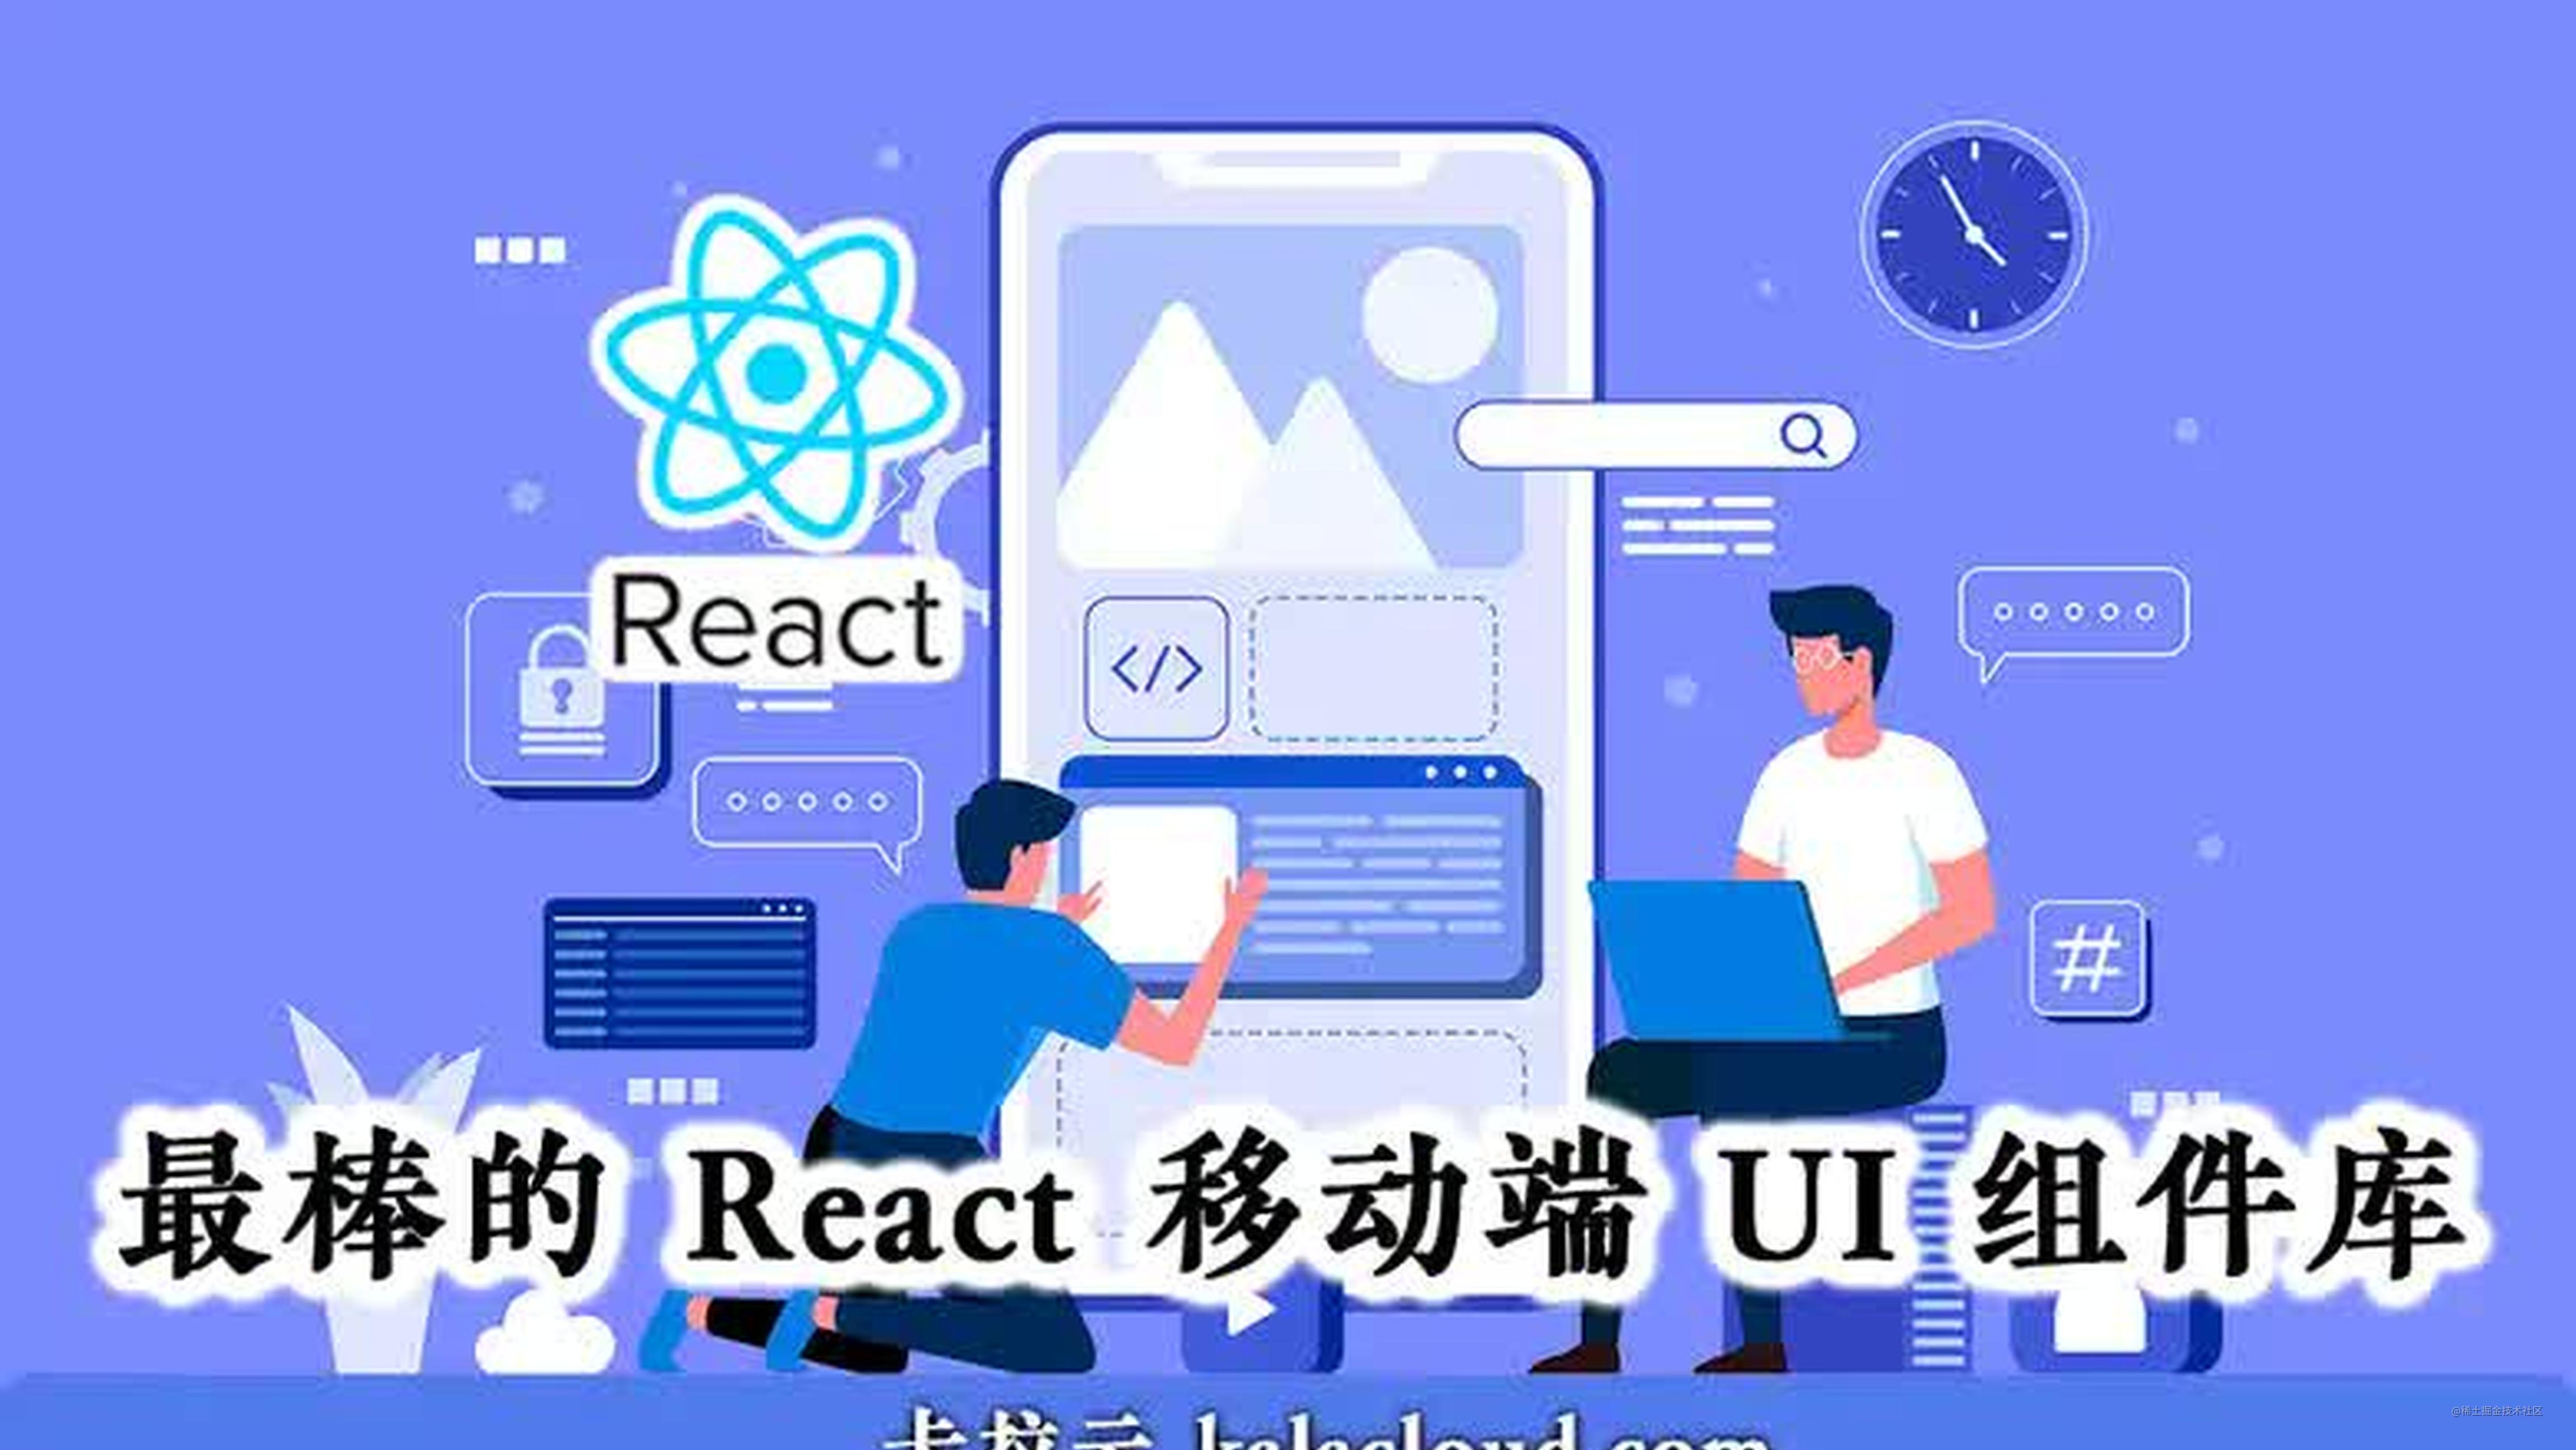 7 款最棒的 React 移动端 UI 组件库 - 特别针对国内使用场景推荐